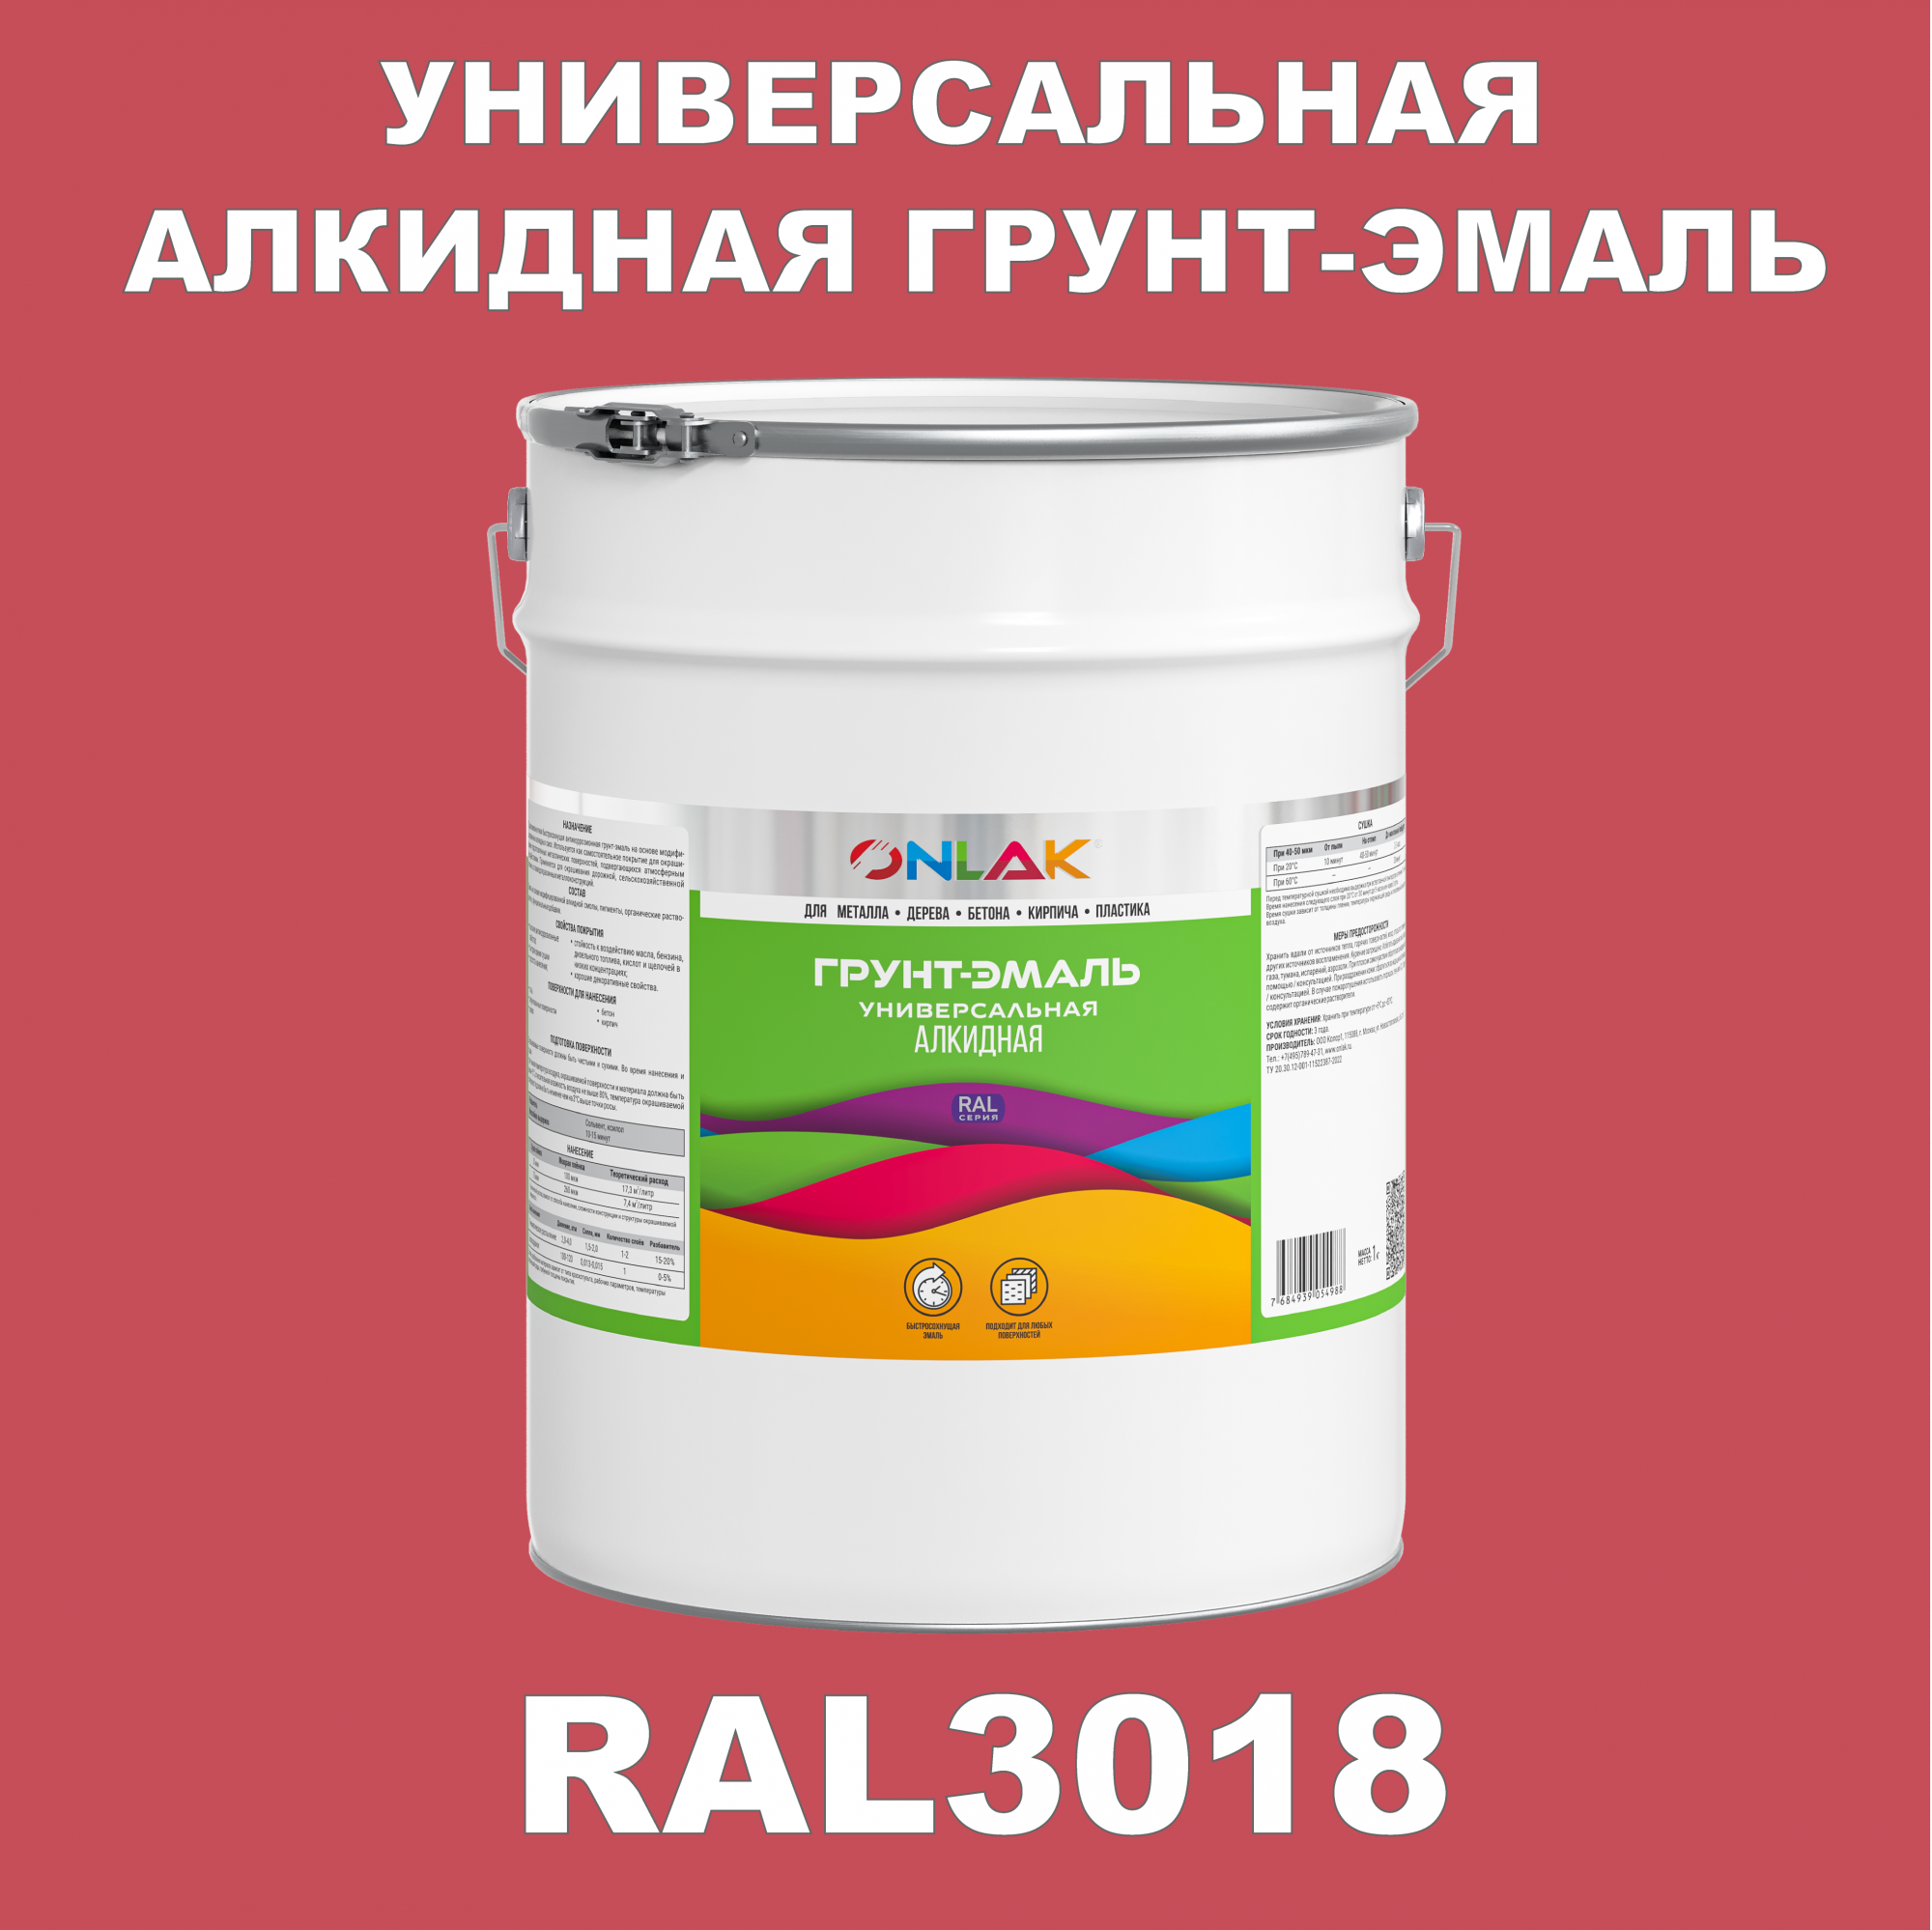 Грунт-эмаль ONLAK 1К RAL3018 антикоррозионная алкидная по металлу по ржавчине 20 кг грунт эмаль yollo по ржавчине алкидная зеленая 0 9 кг